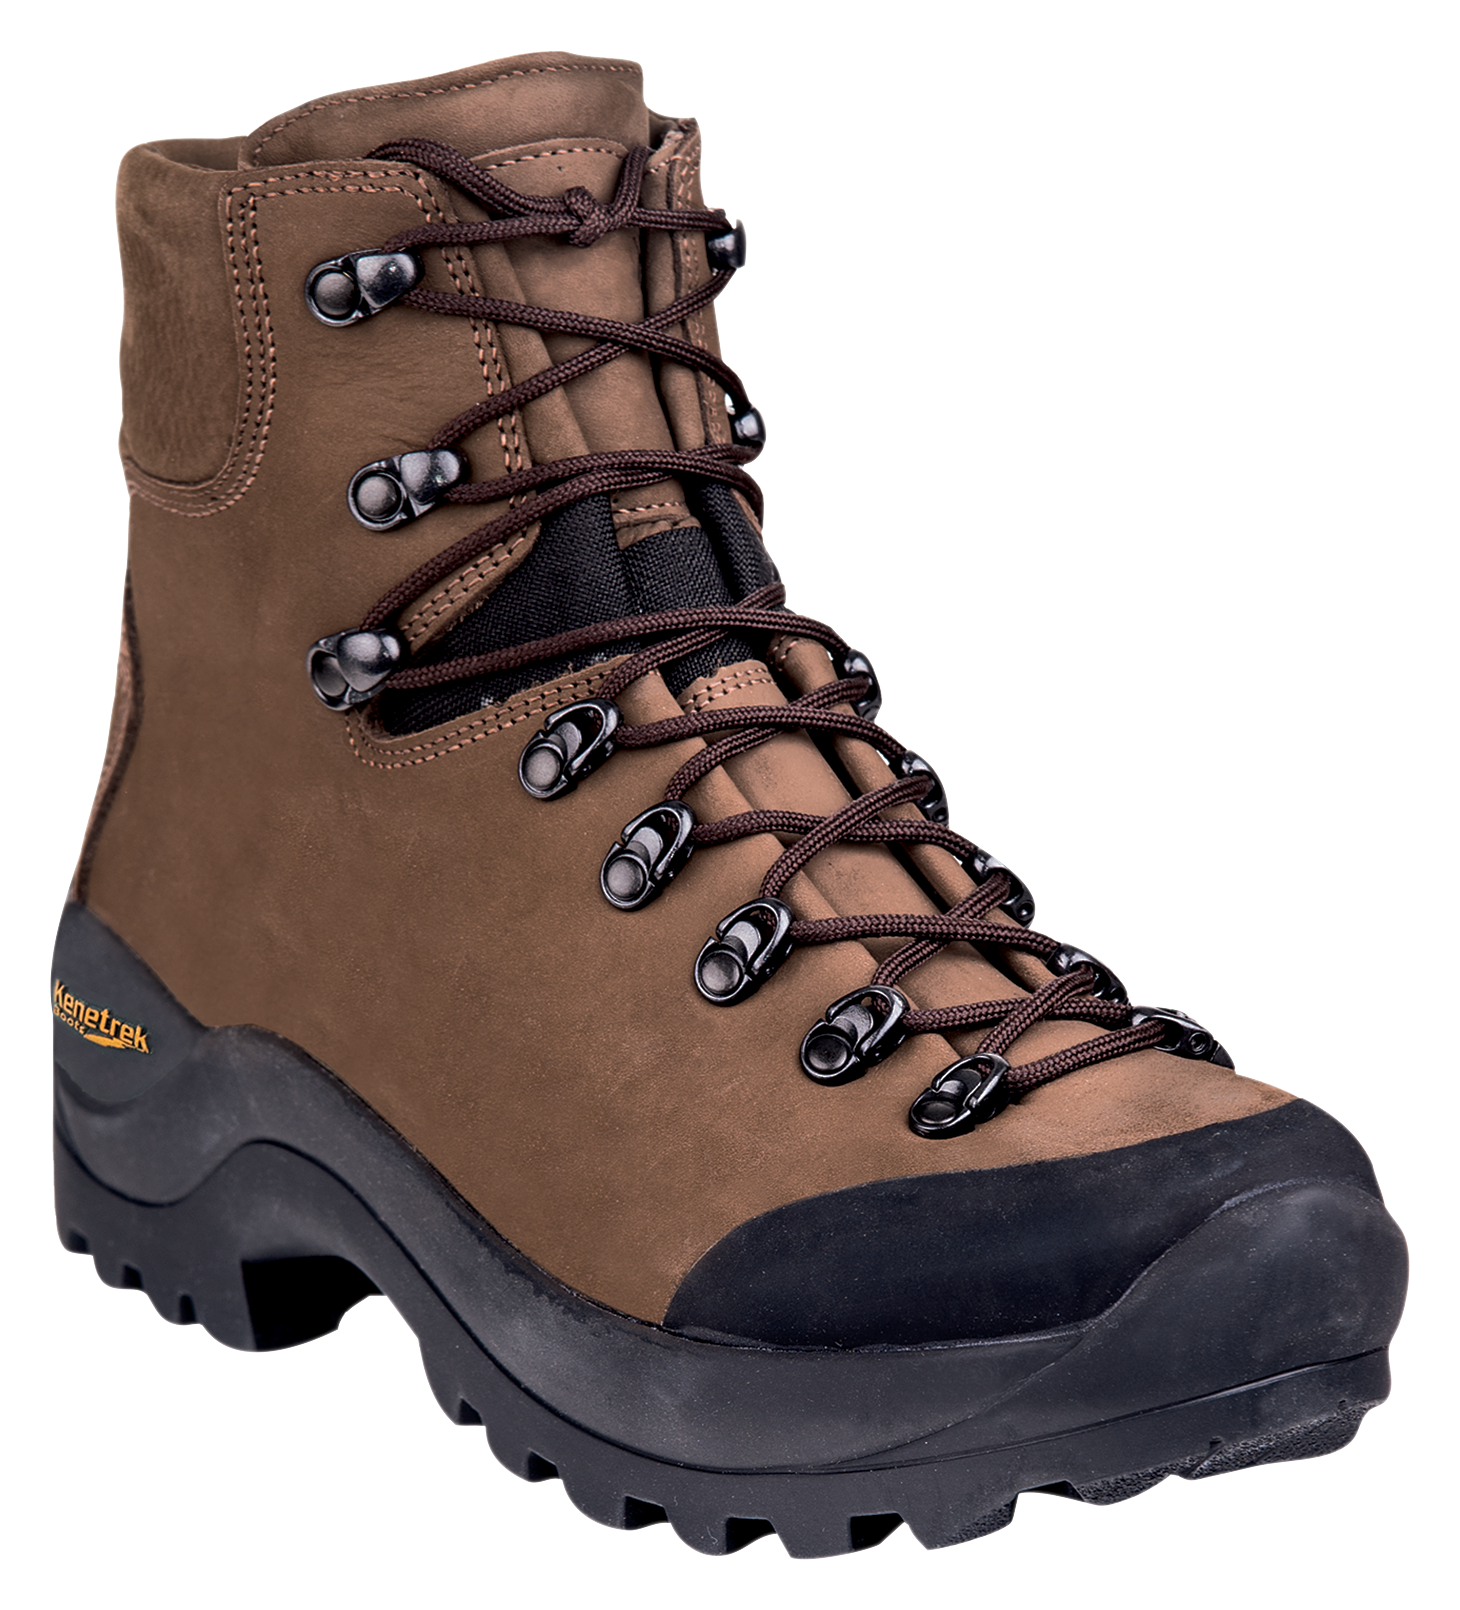 Kenetrek Desert Guide Hunting Boots for Men - Brown - 14M